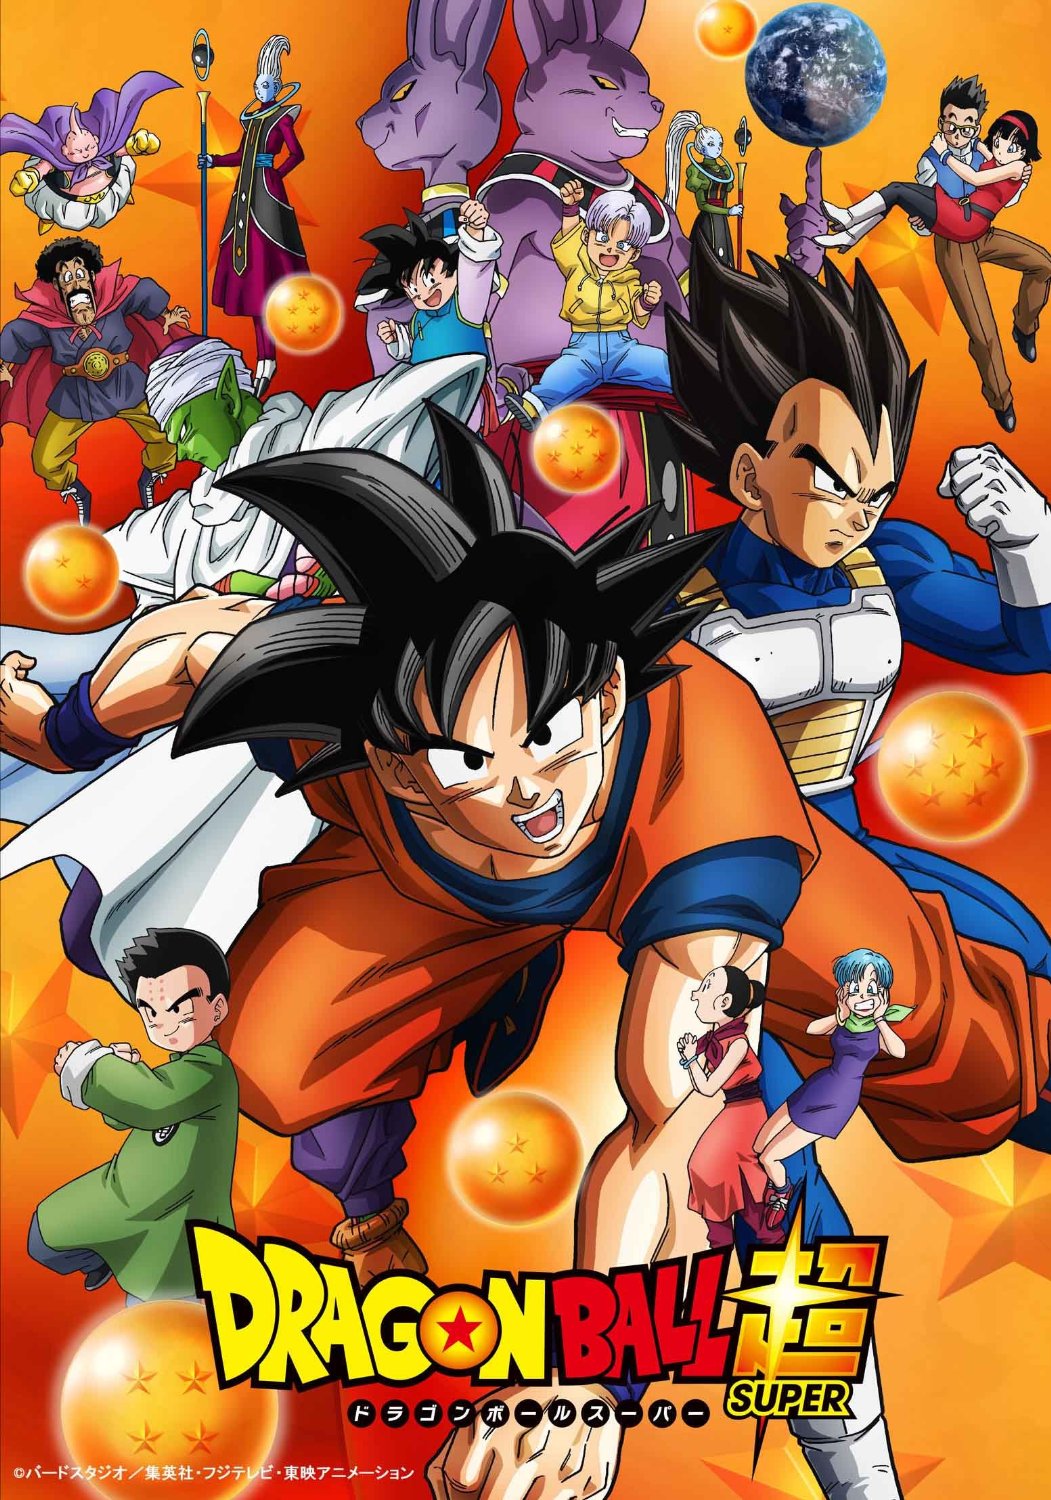 Dragon Ball Super: SUPER HERO English Dub release date